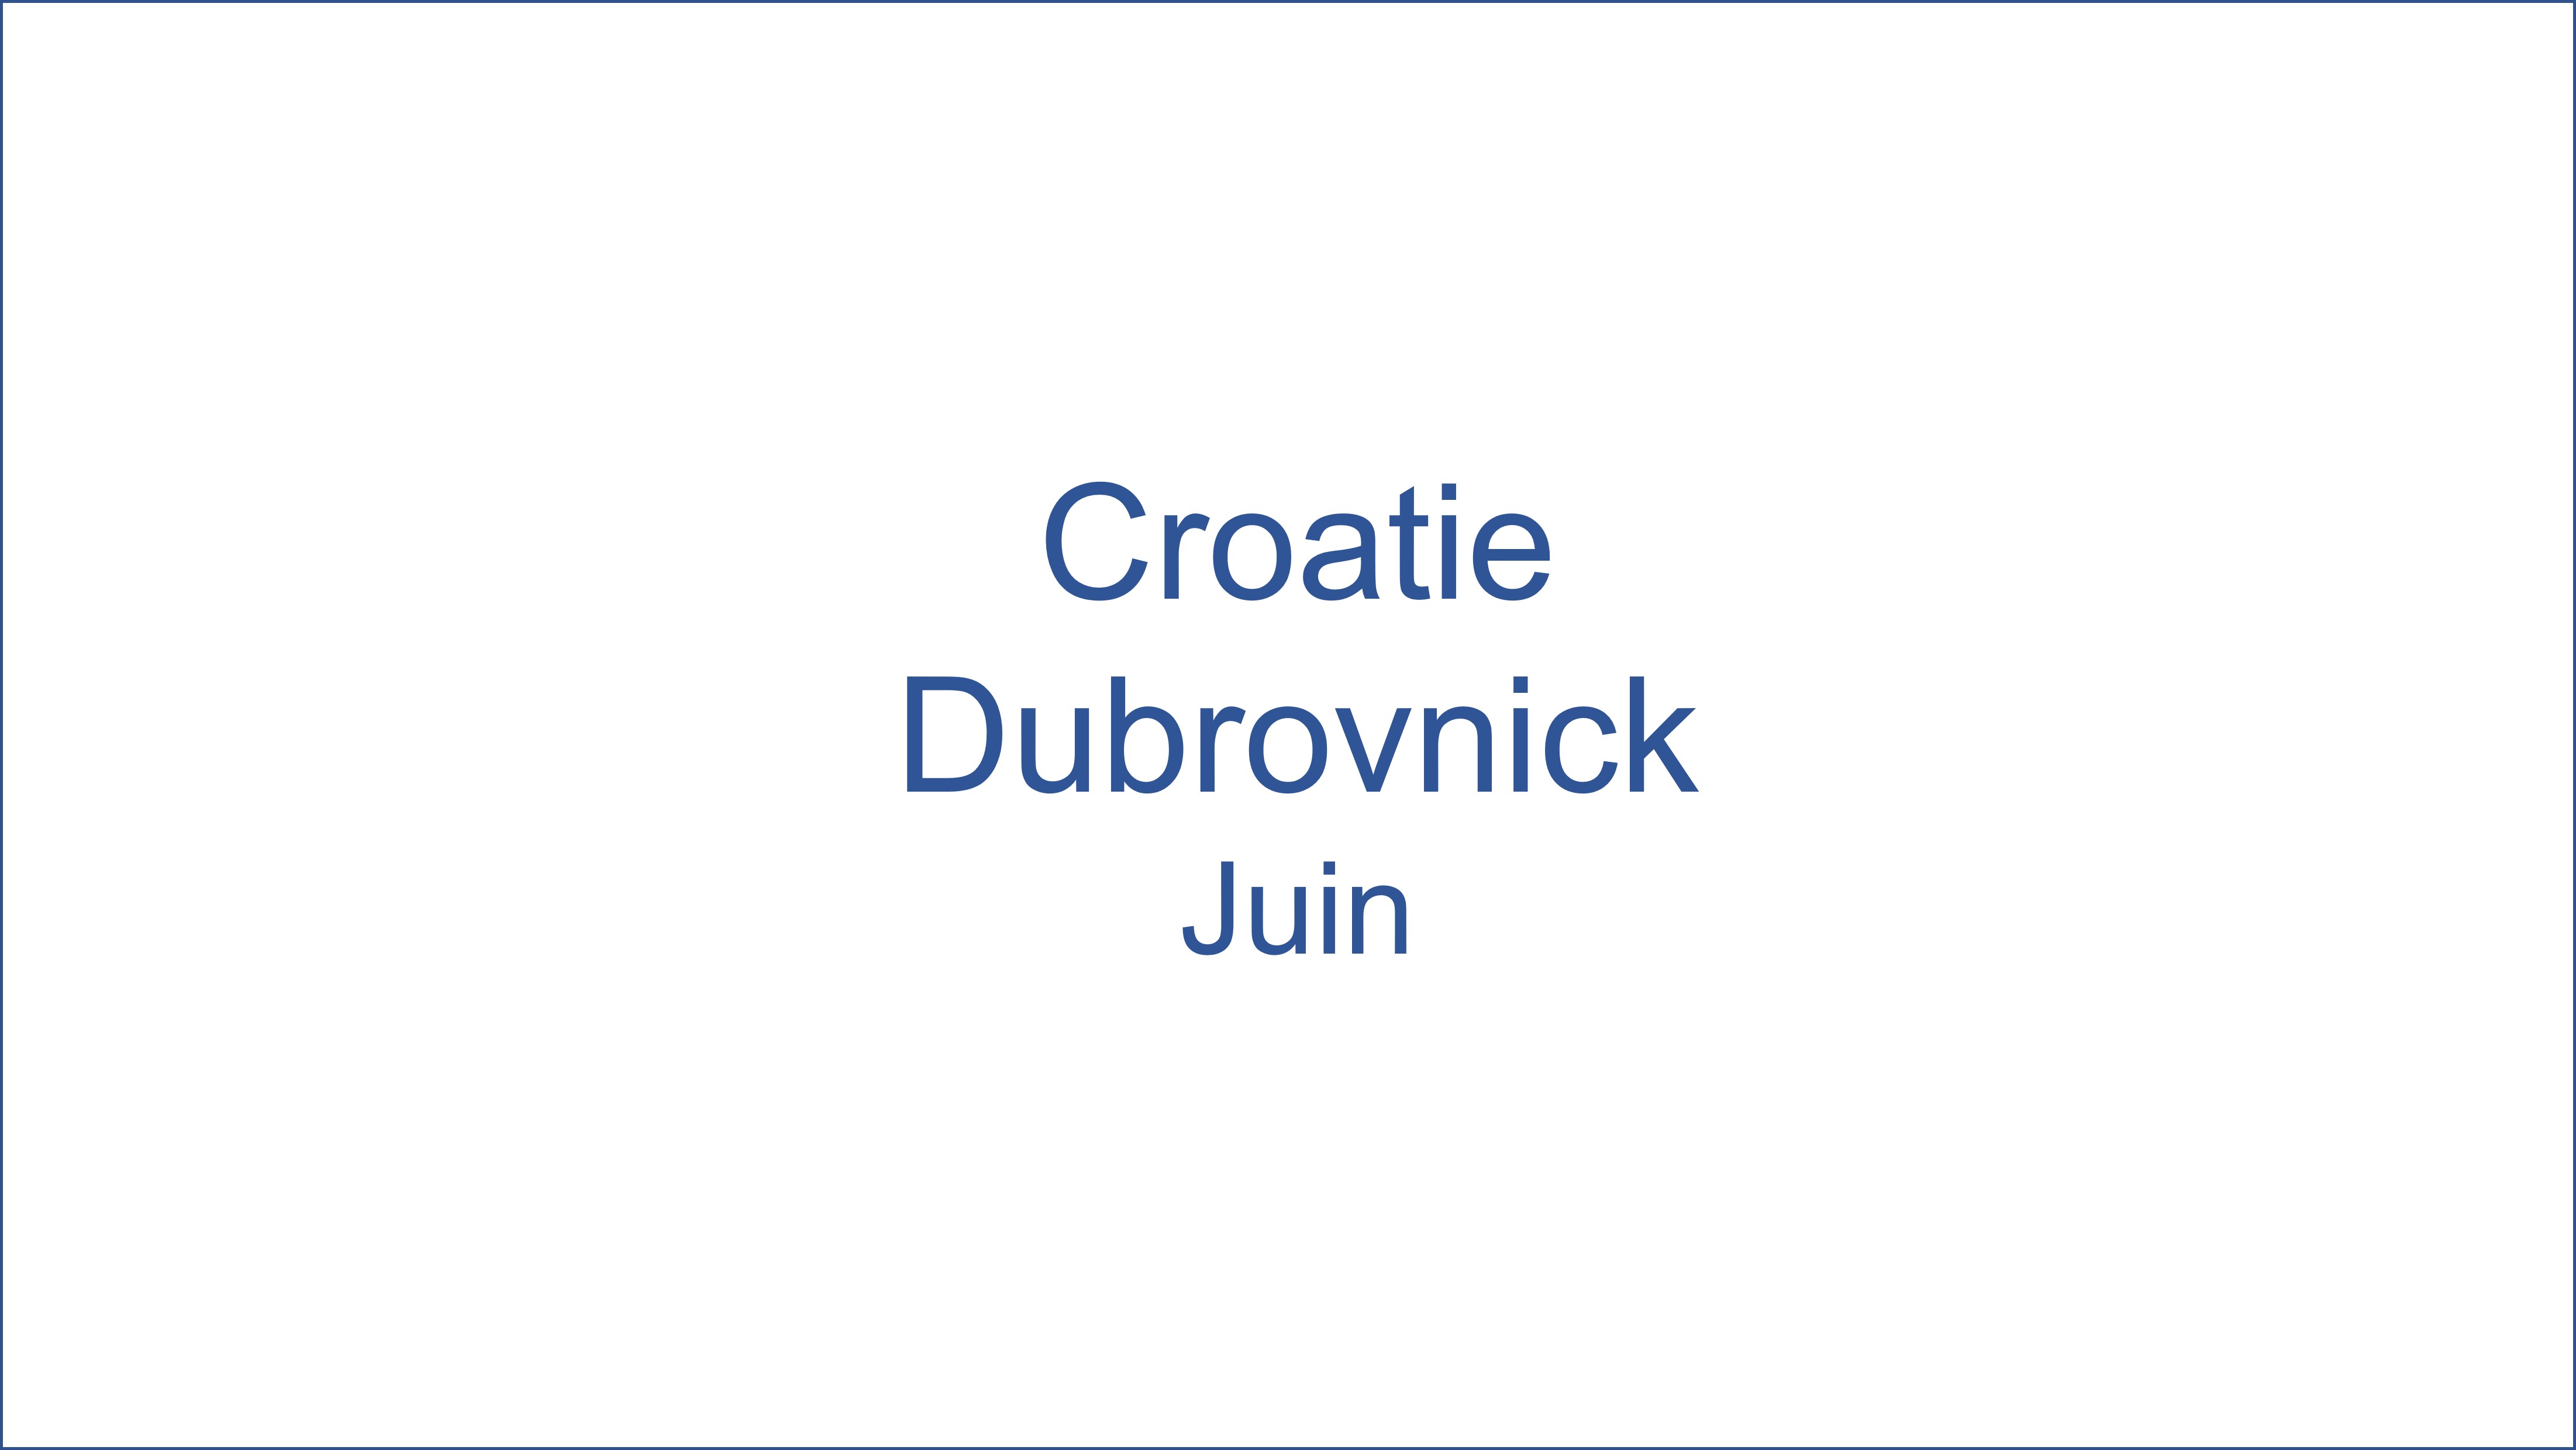 Croatie - Dubrovnick 06/2022